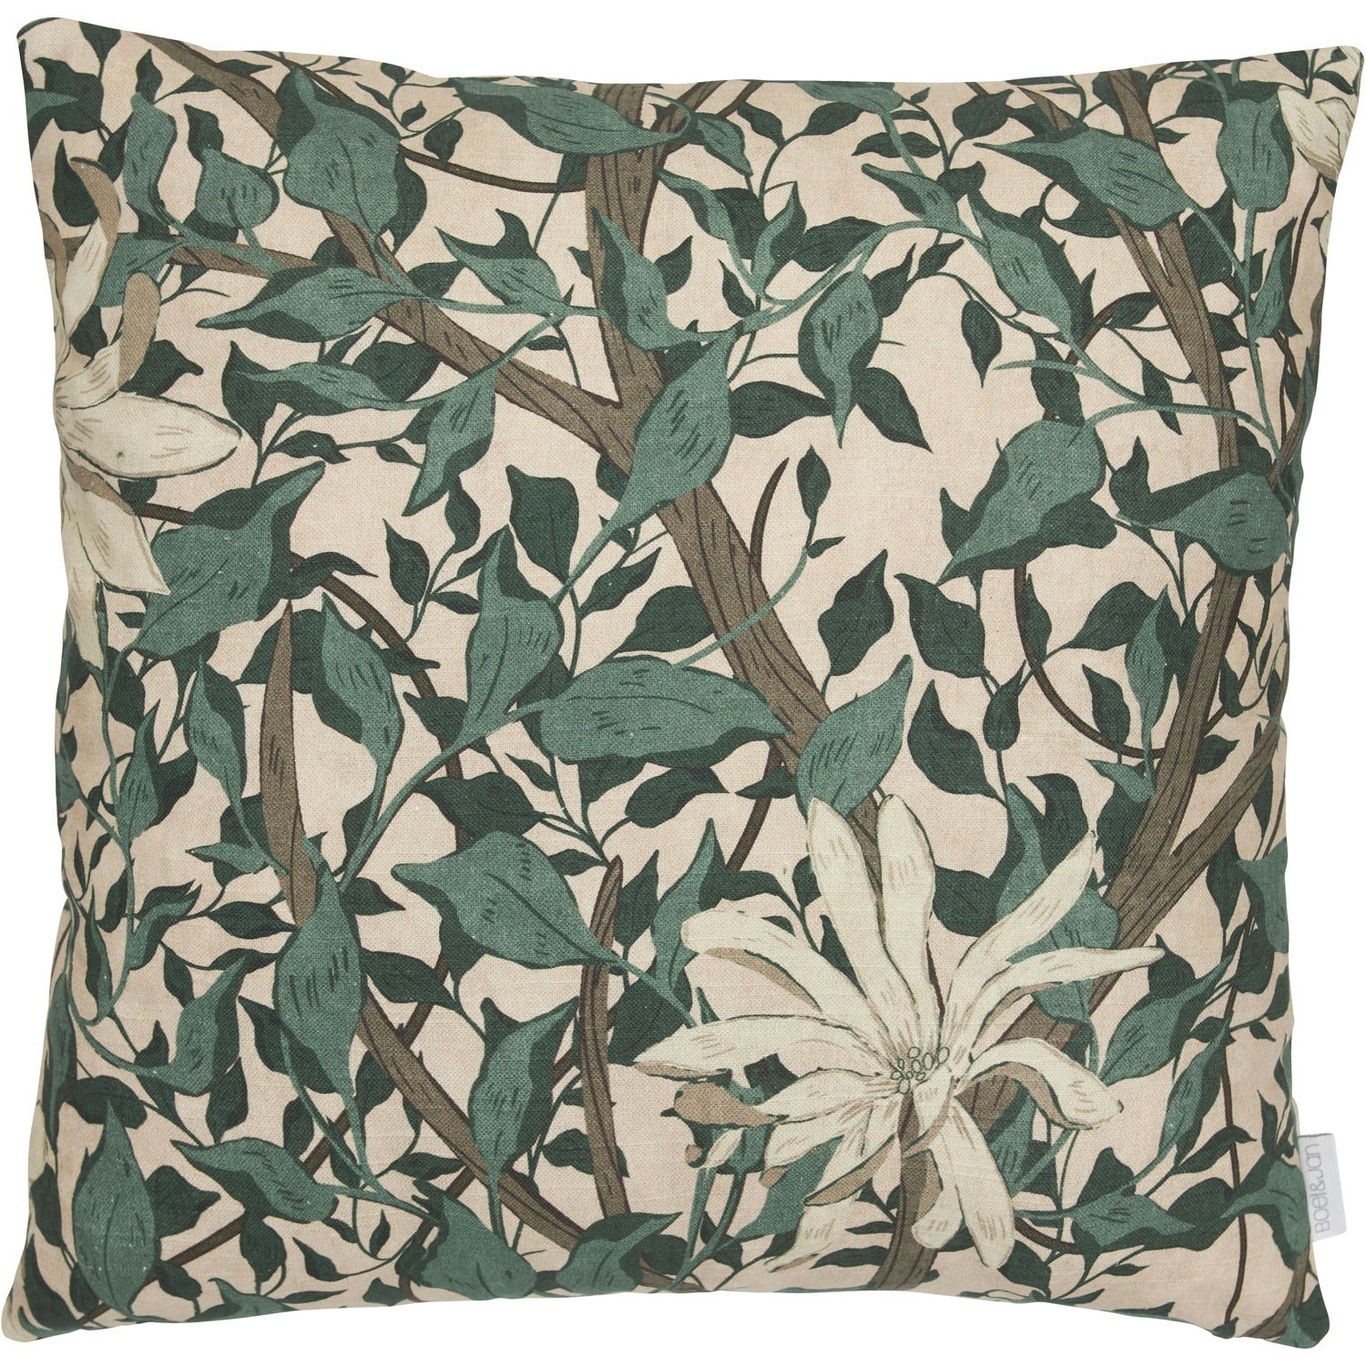 Maja Cushion Cover 45x45 cm, Green/Beige